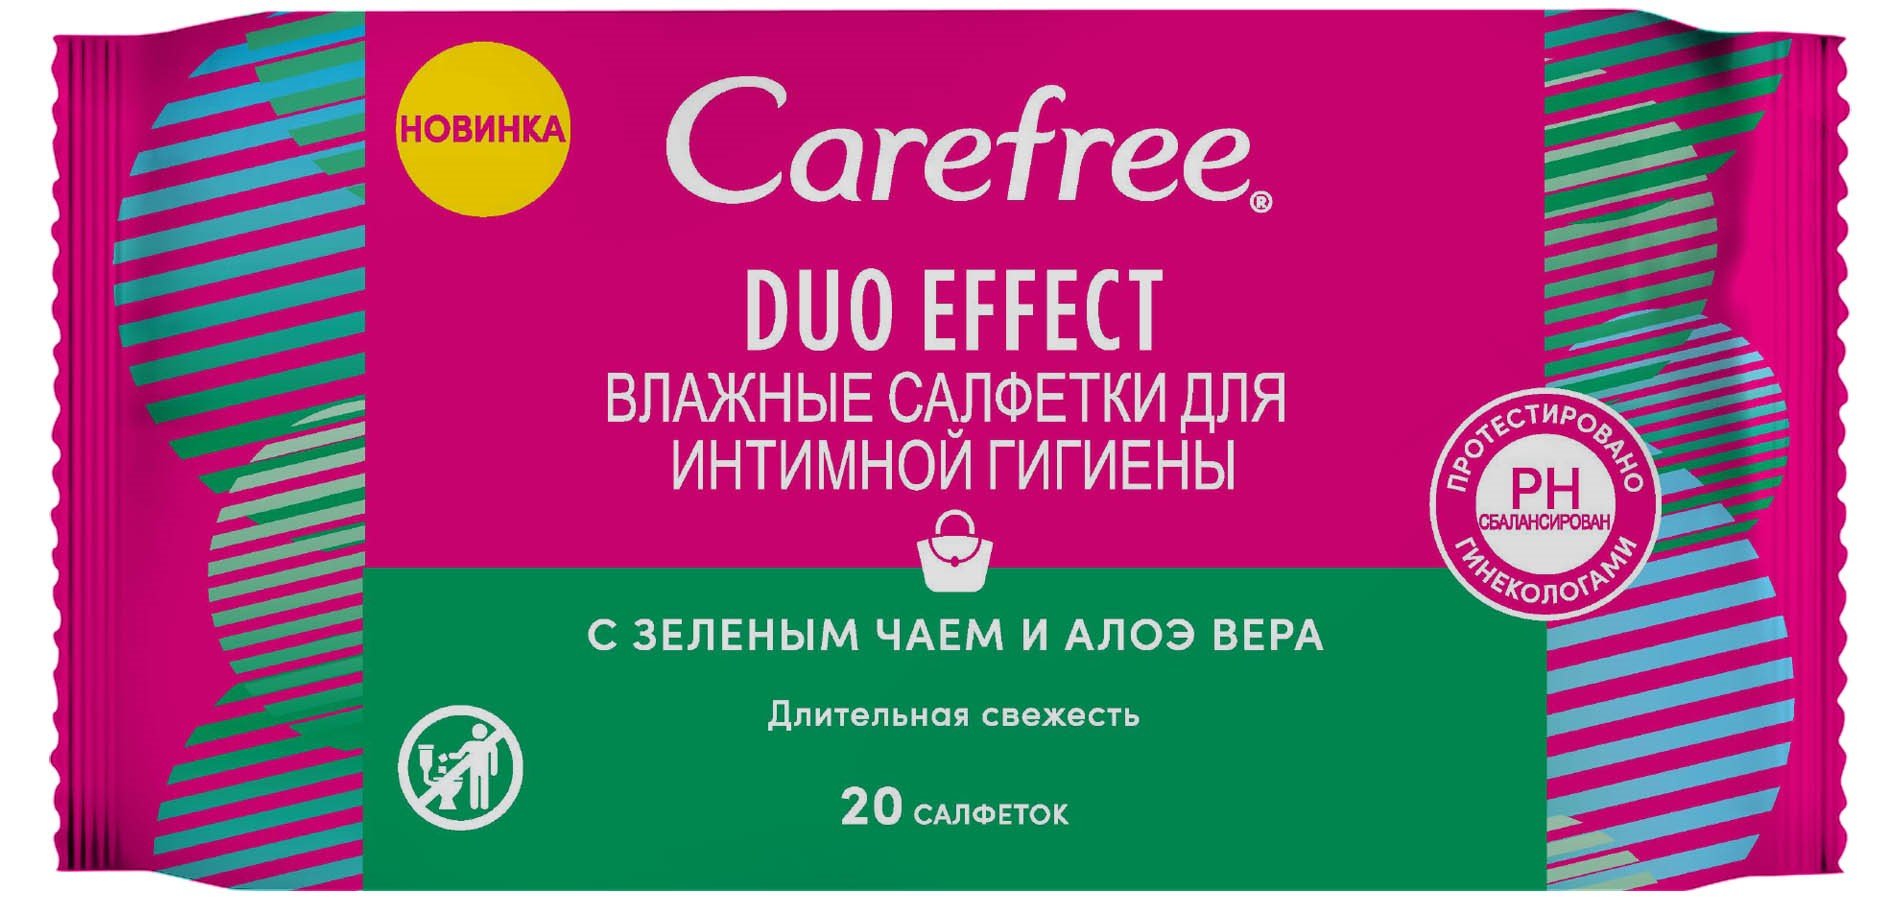 Влажные салфетки для интимной гигиены Carefree Duo Effect, c зеленым чаем и алоэ вера, 20 шт. - фото 1